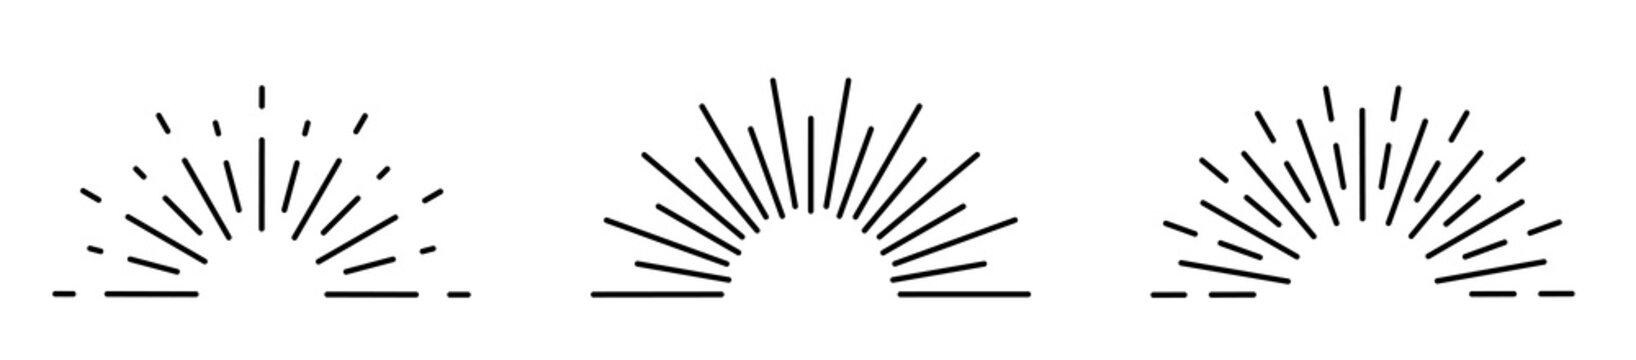 Sunburst set isolated on white background. Sunburst black color. Flat style - stock vector.